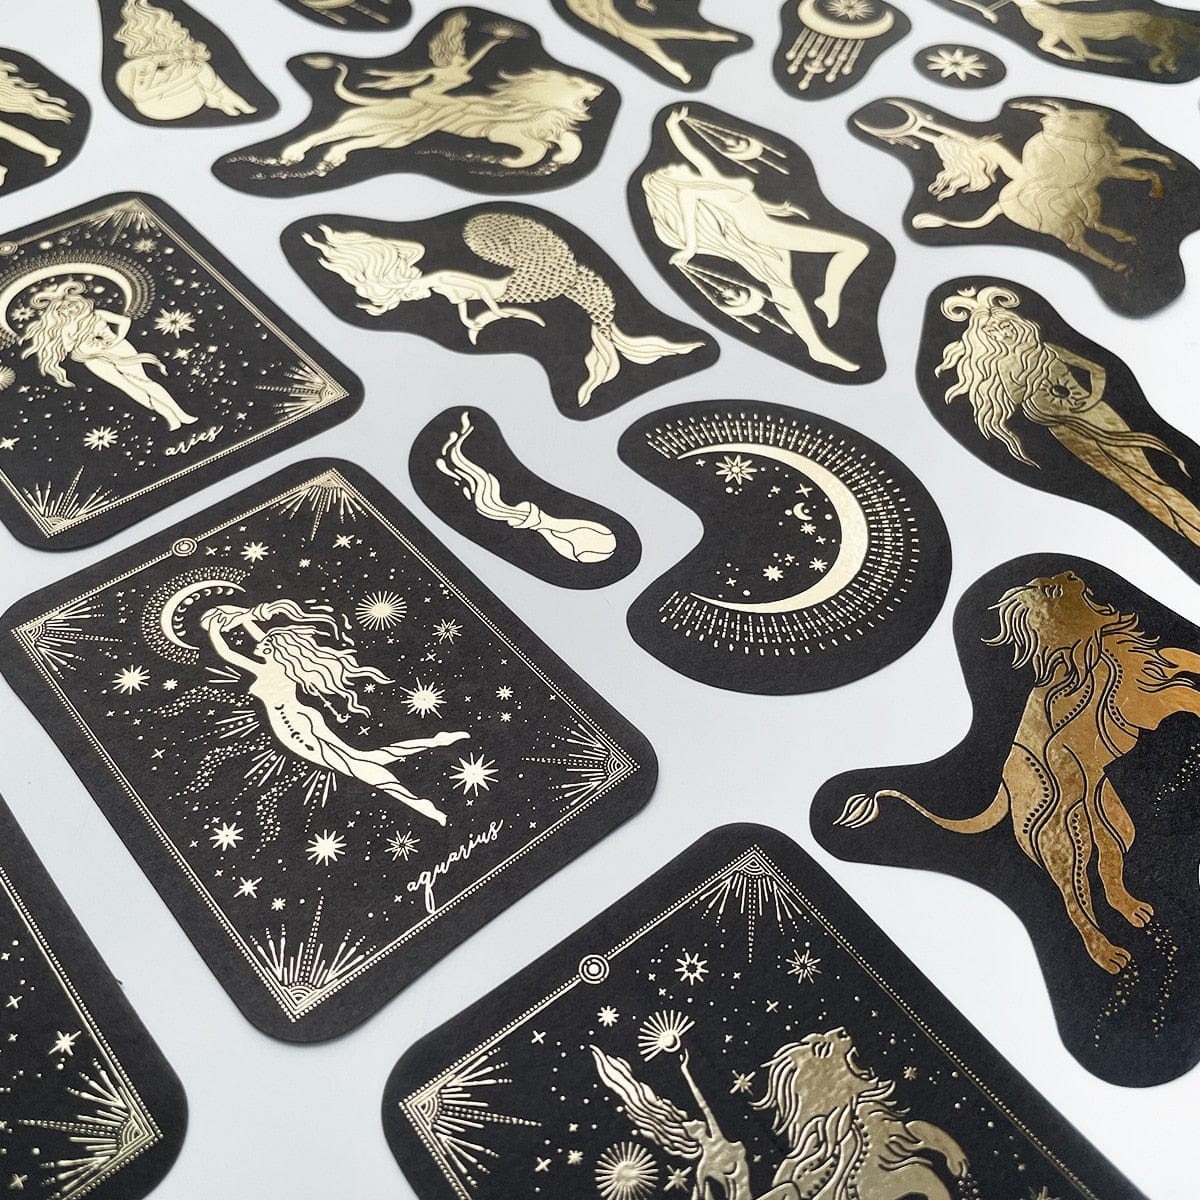 KUMA Stationery & Crafts  E Large 40pcs Constellation/Zodiac Sticker Set